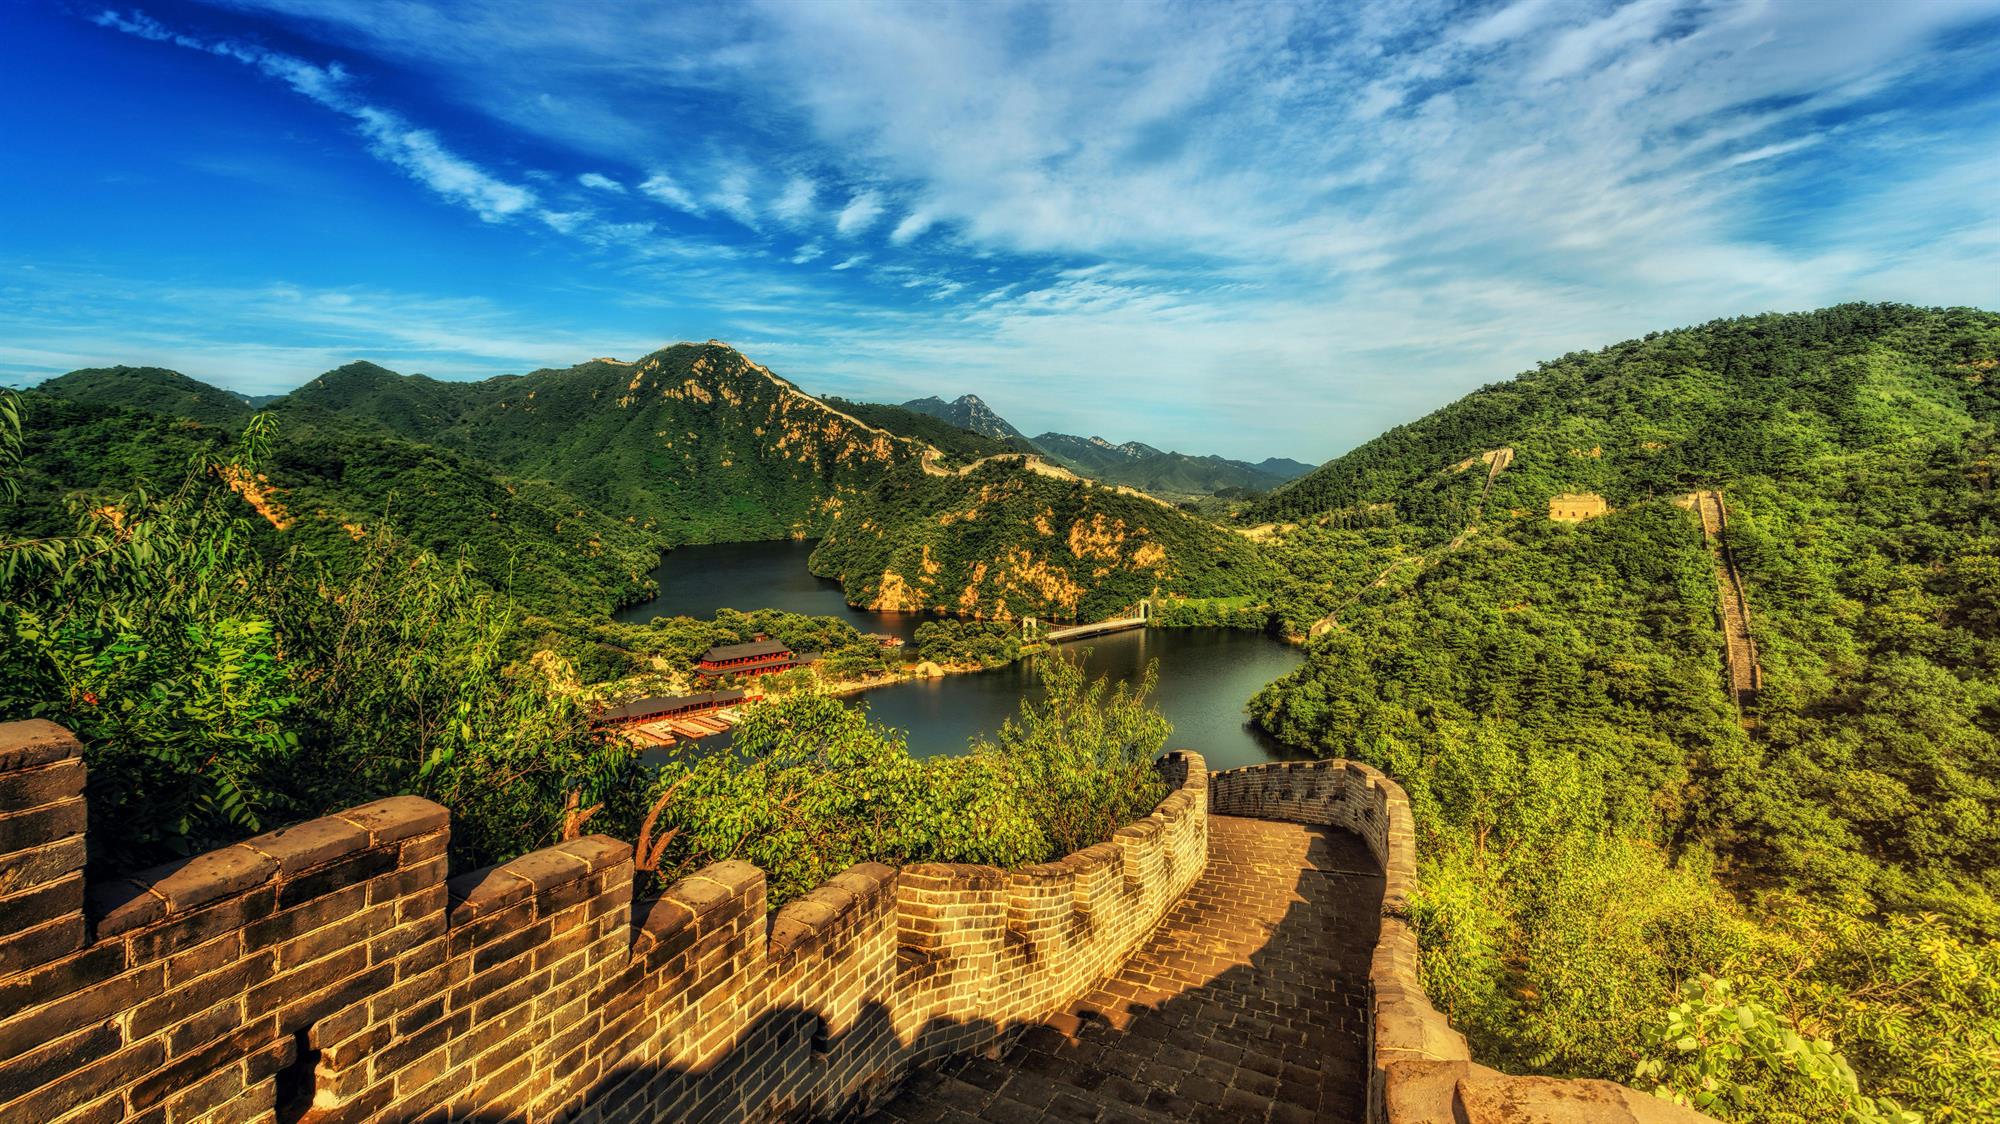  טיול מאורגן לסין, כולל שייט בנהר הינגצ'ה